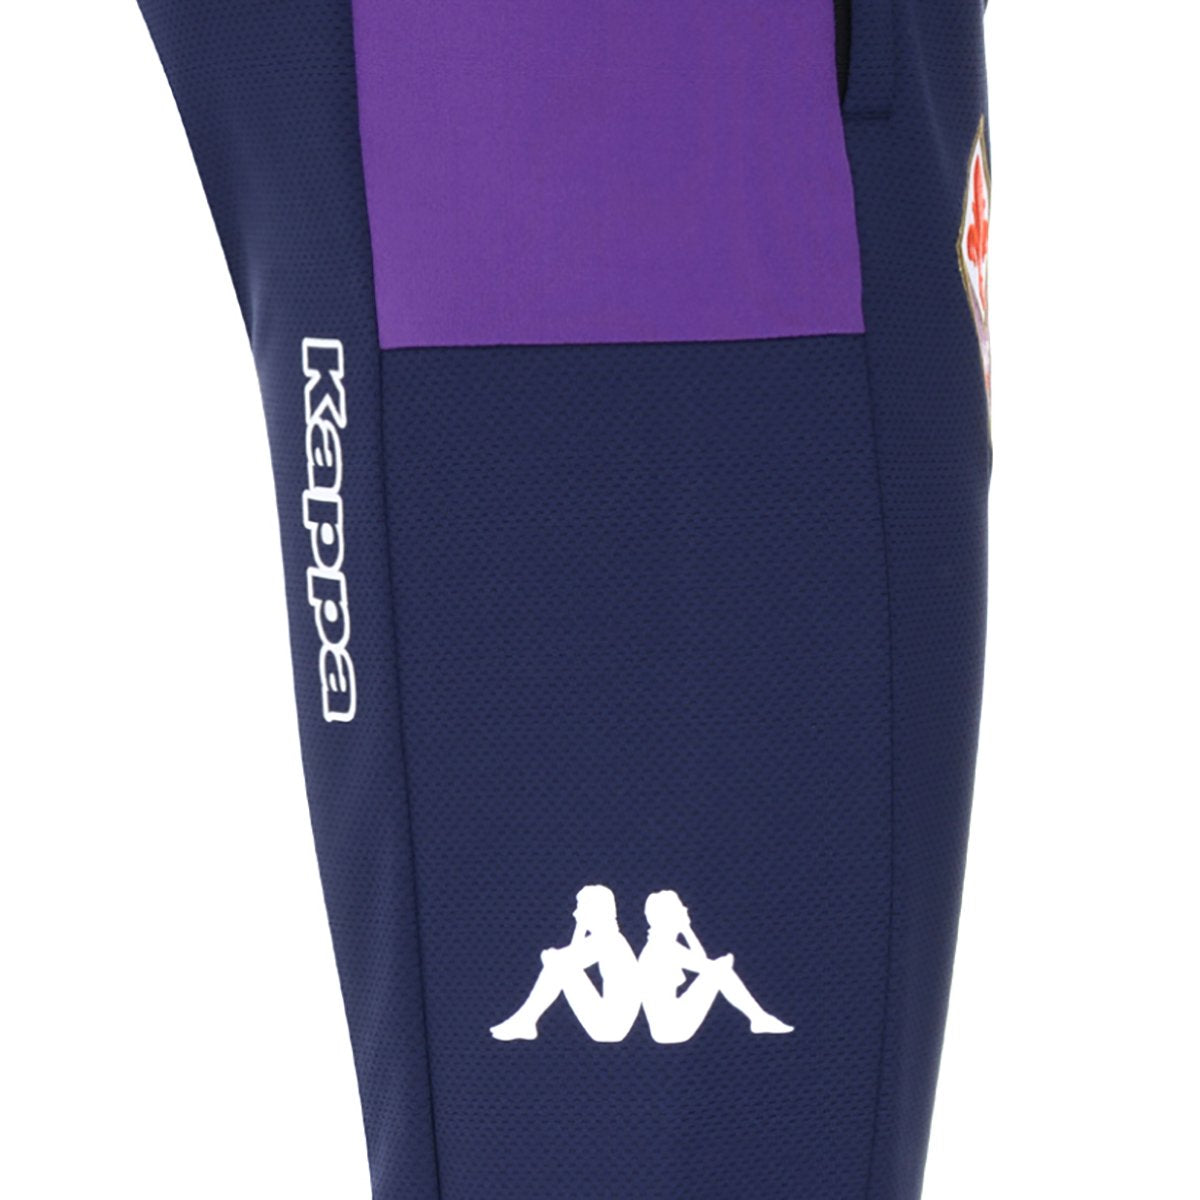 Pantalón de jogging Abunszip Pro 5 Fiorentina hombre Azul - Imagen 3